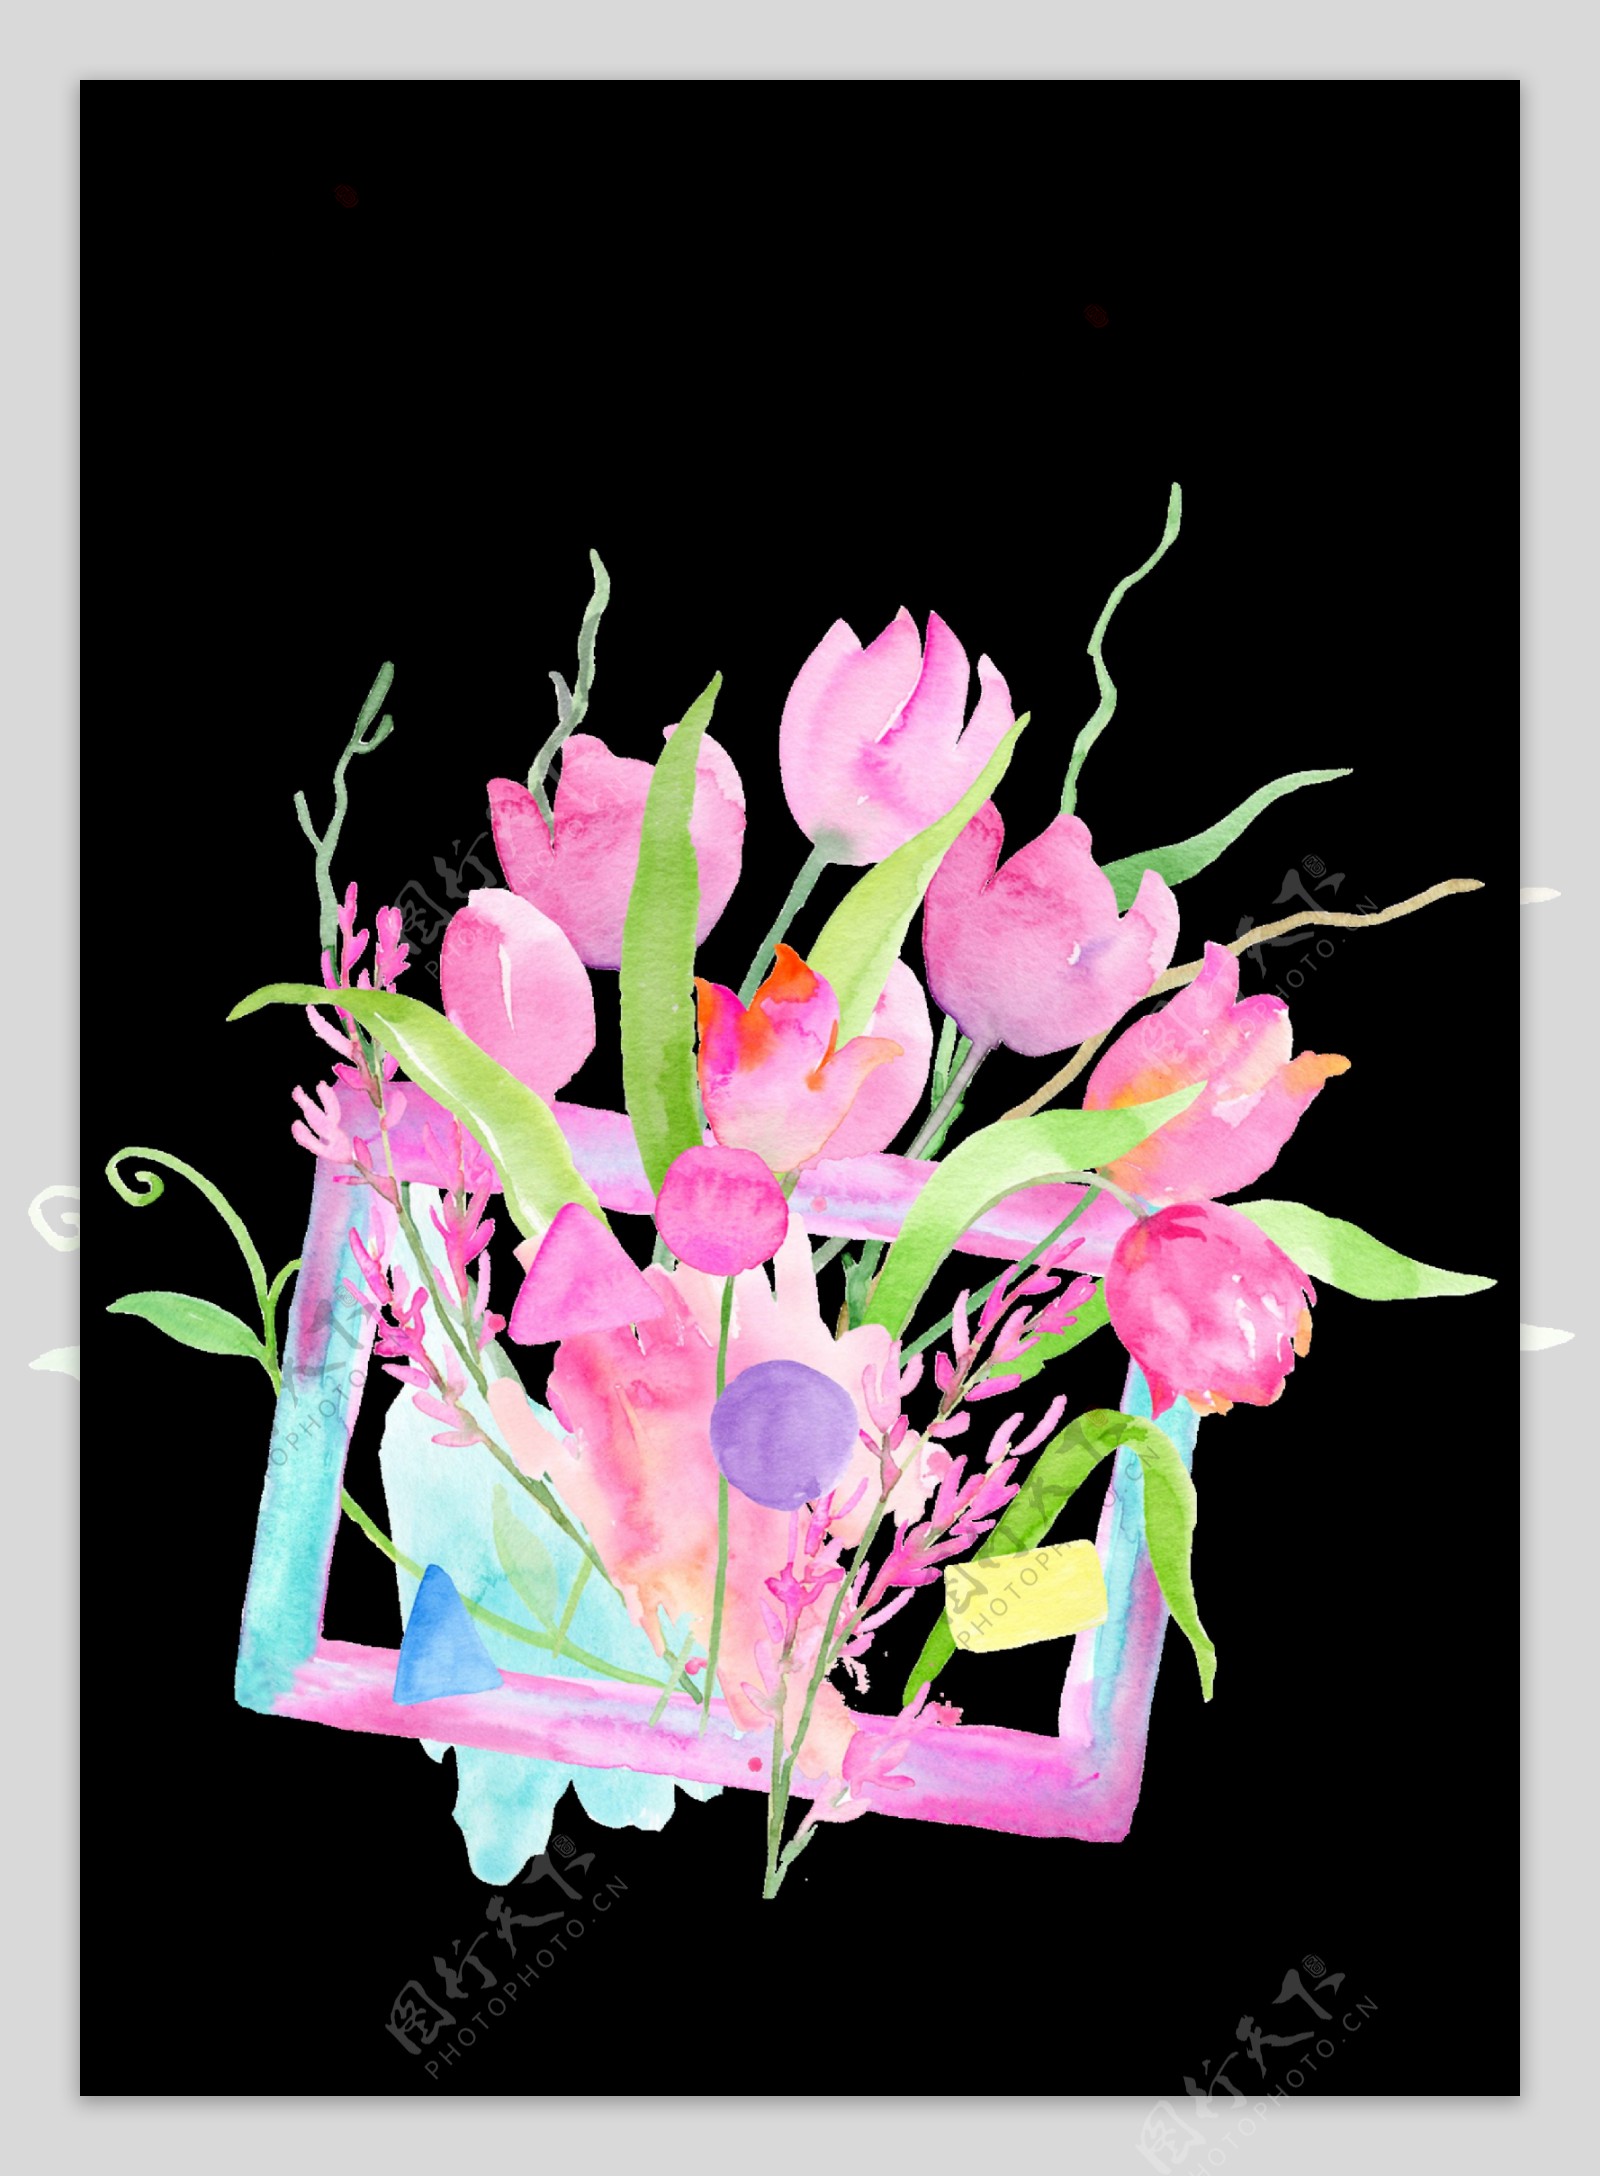 粉色系花卉透明素材